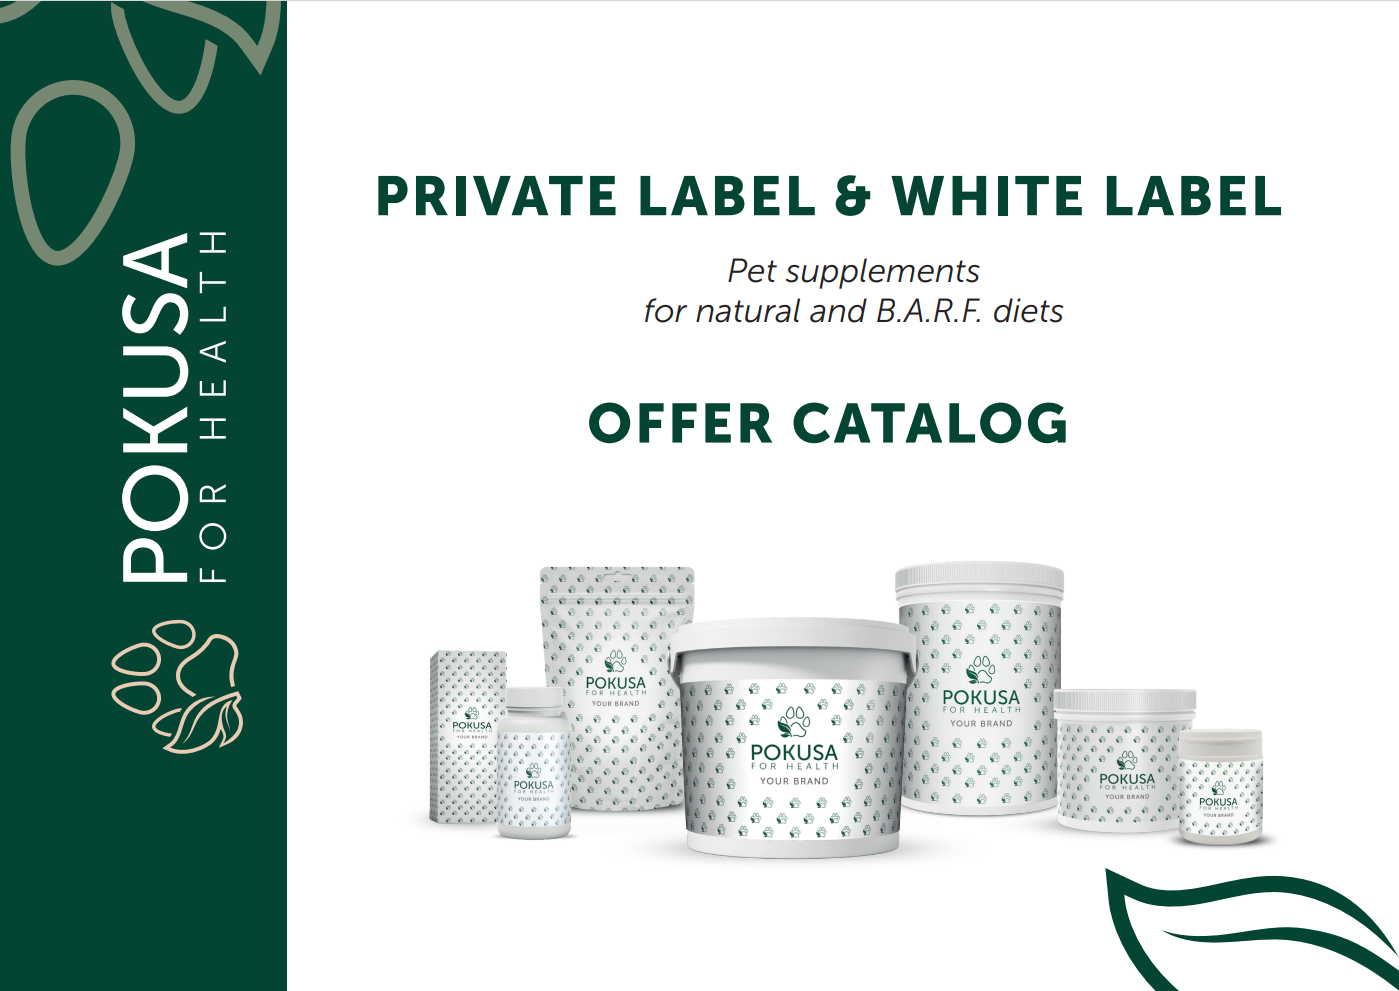 Private Label & White Label offer catalog